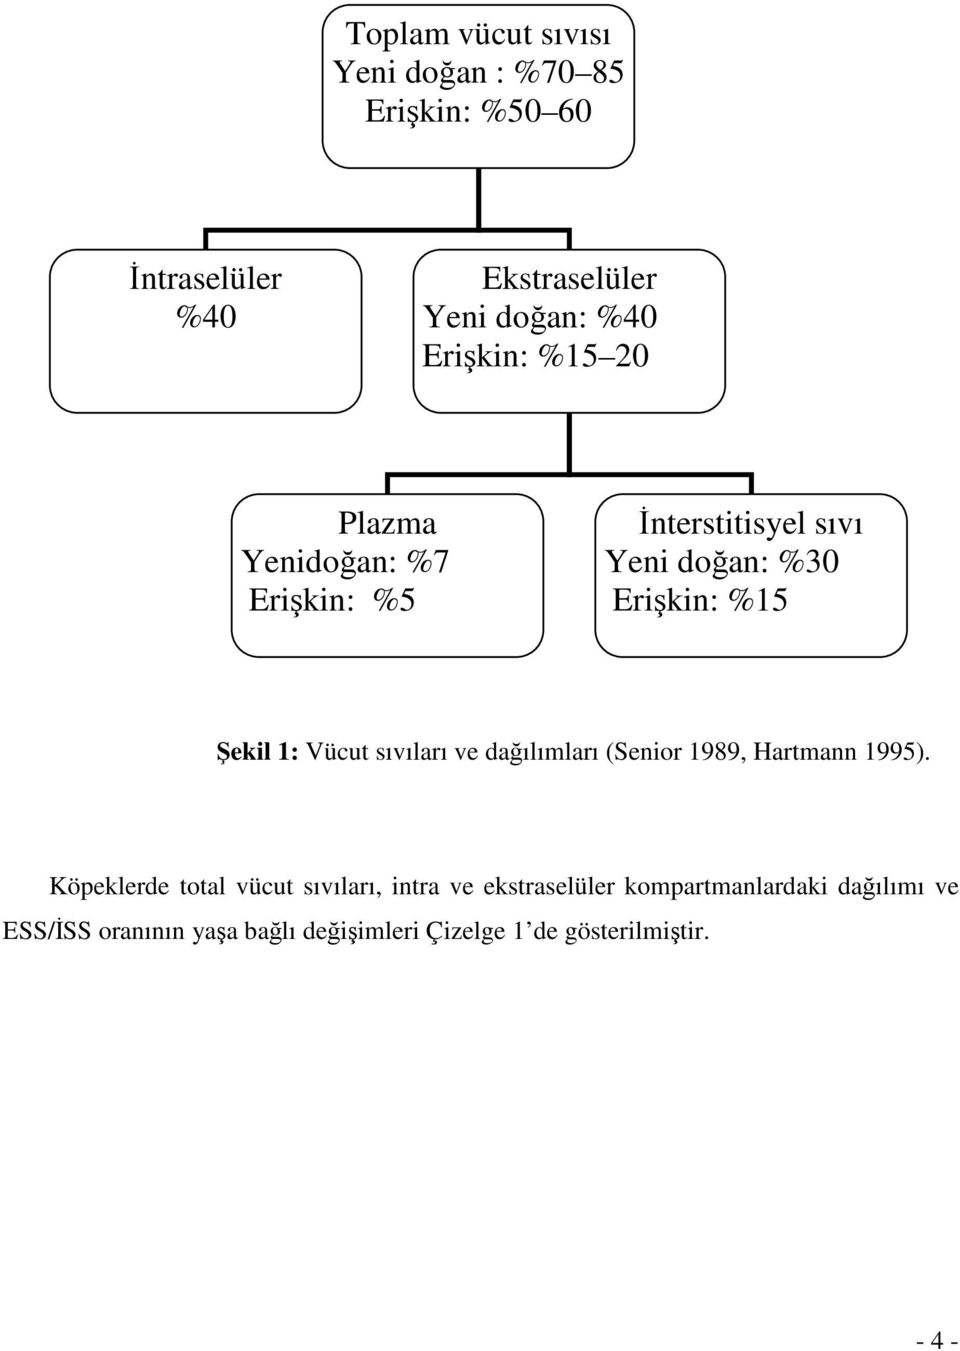 Vücut sıvıları ve dağılımları (Senior 1989, Hartmann 1995).